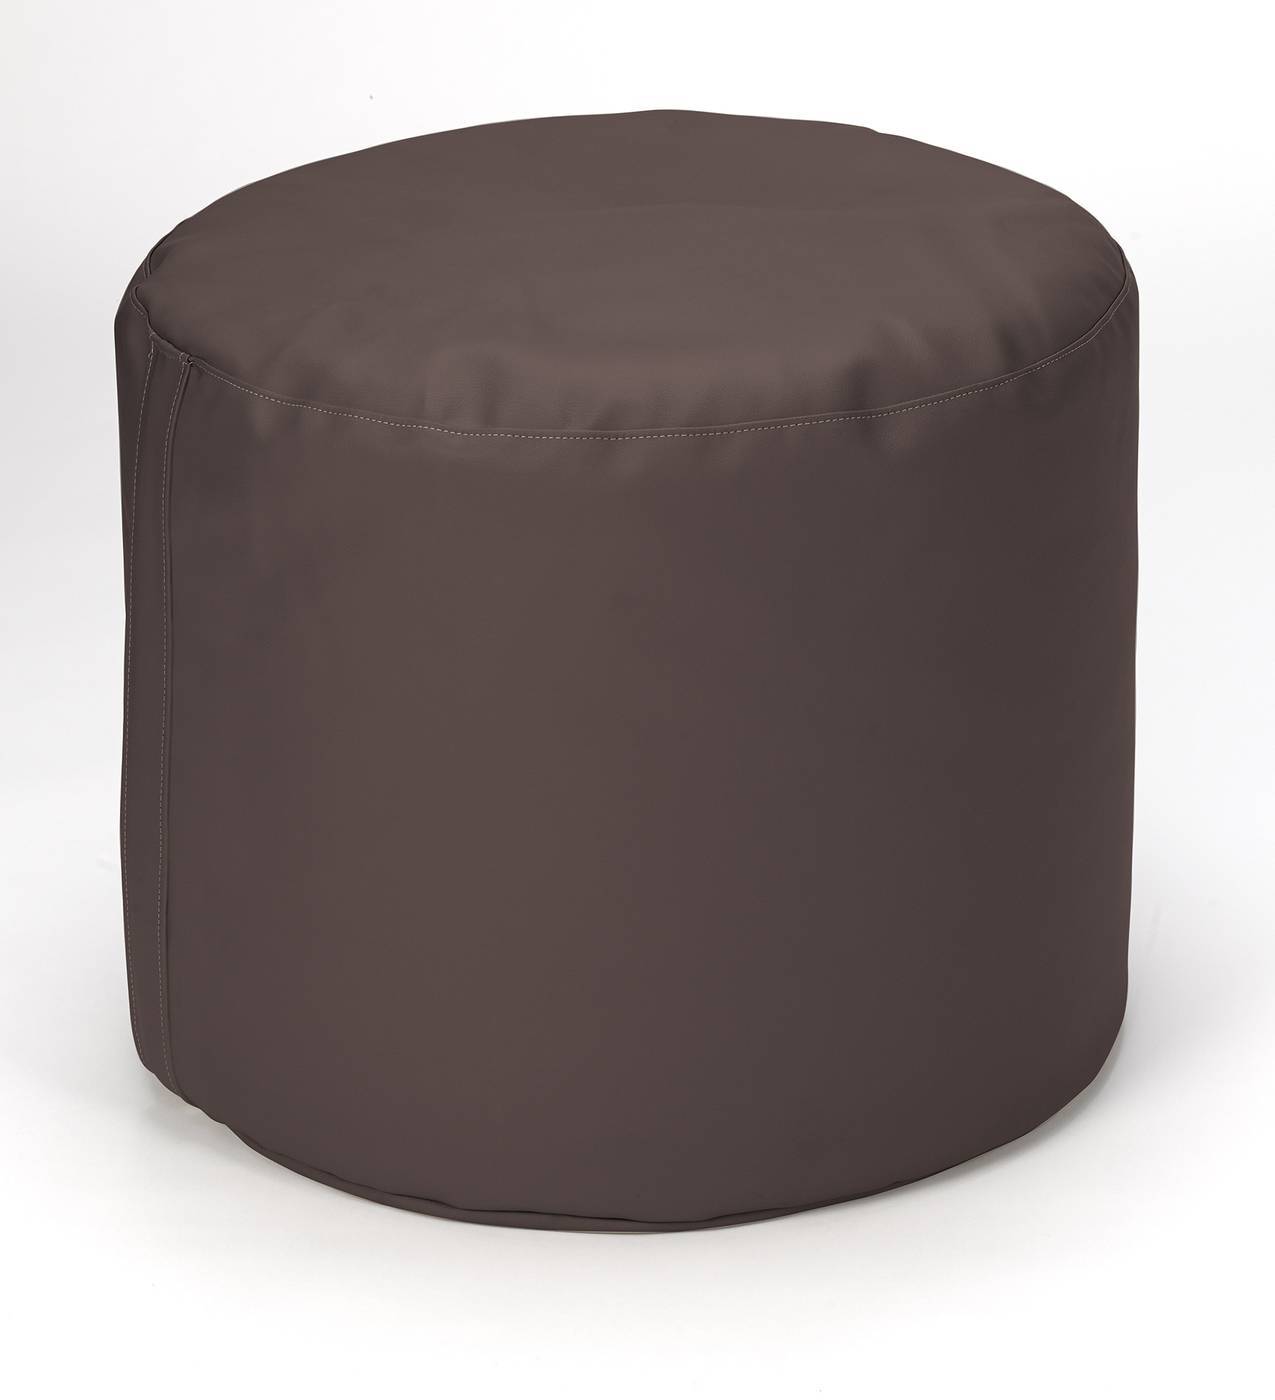 Pouf redondo para dormitorio, tapizado en polipiel de alta calidad color chocolate